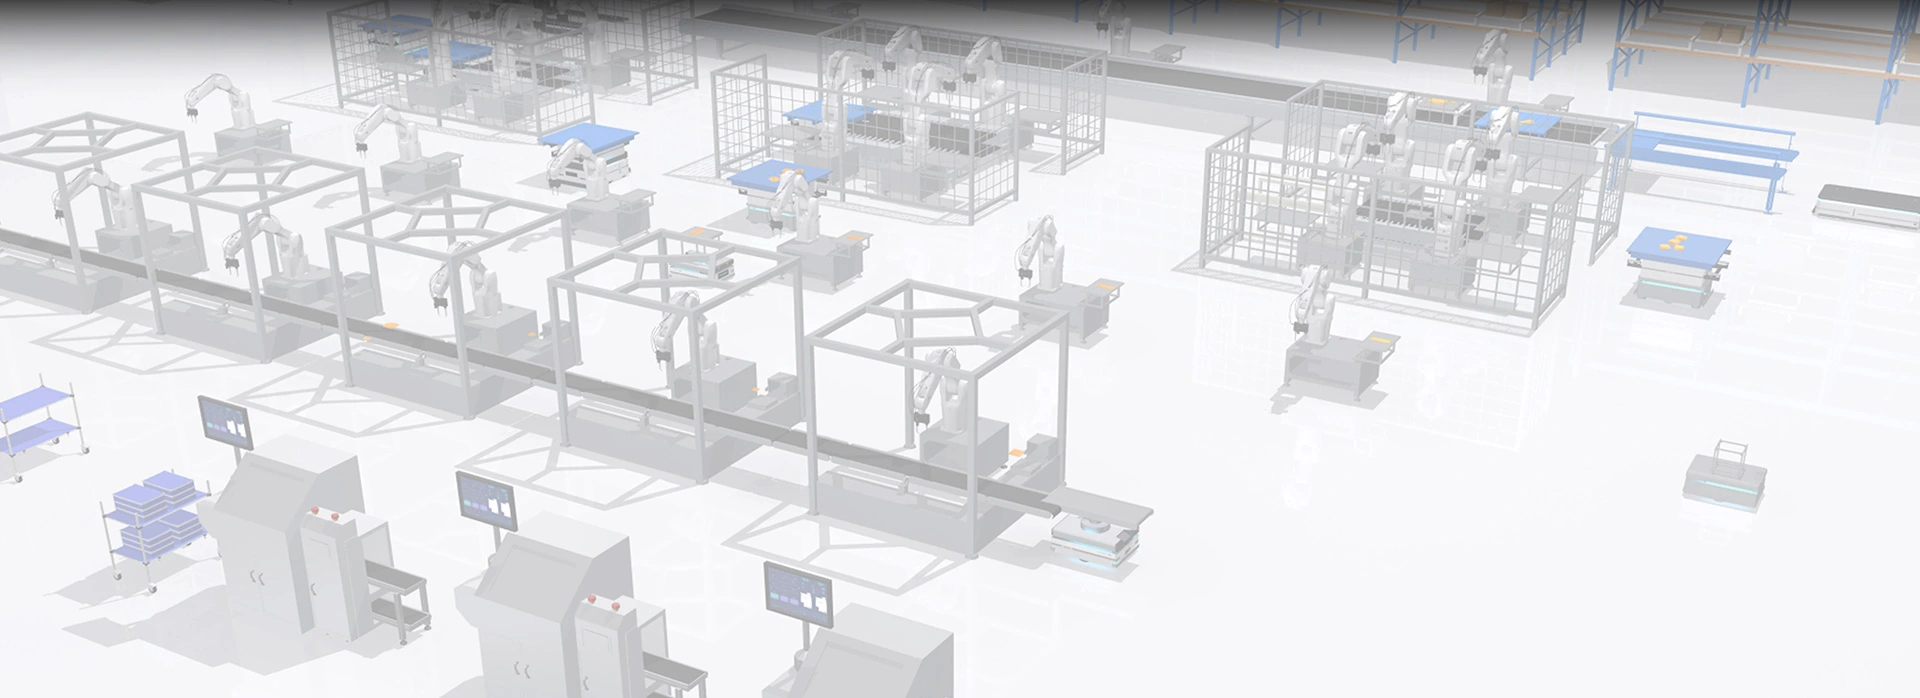 Autonomous Mobile Robots Warehouse